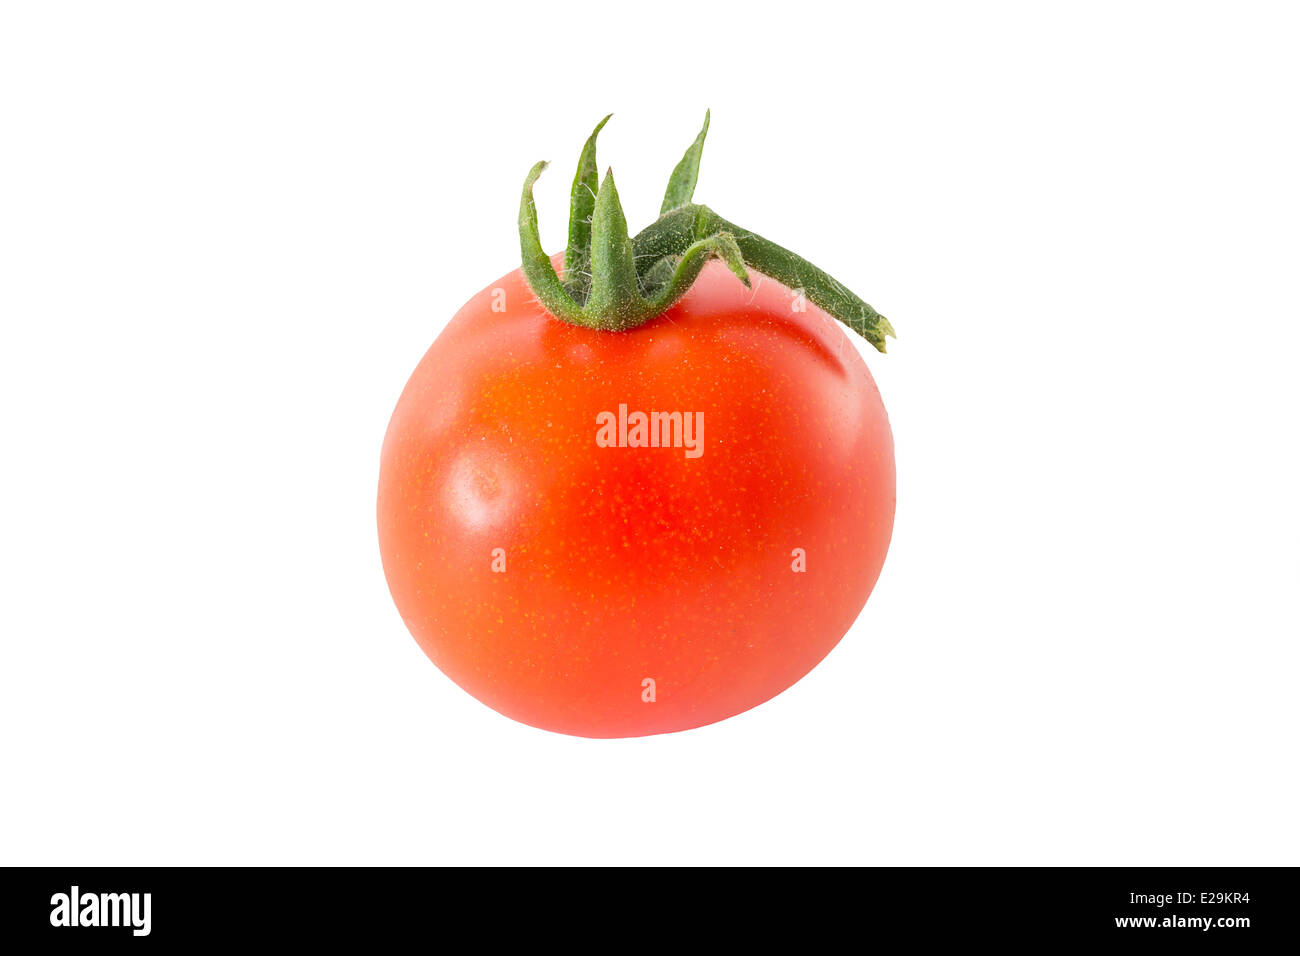 Entire tomato Stock Photo